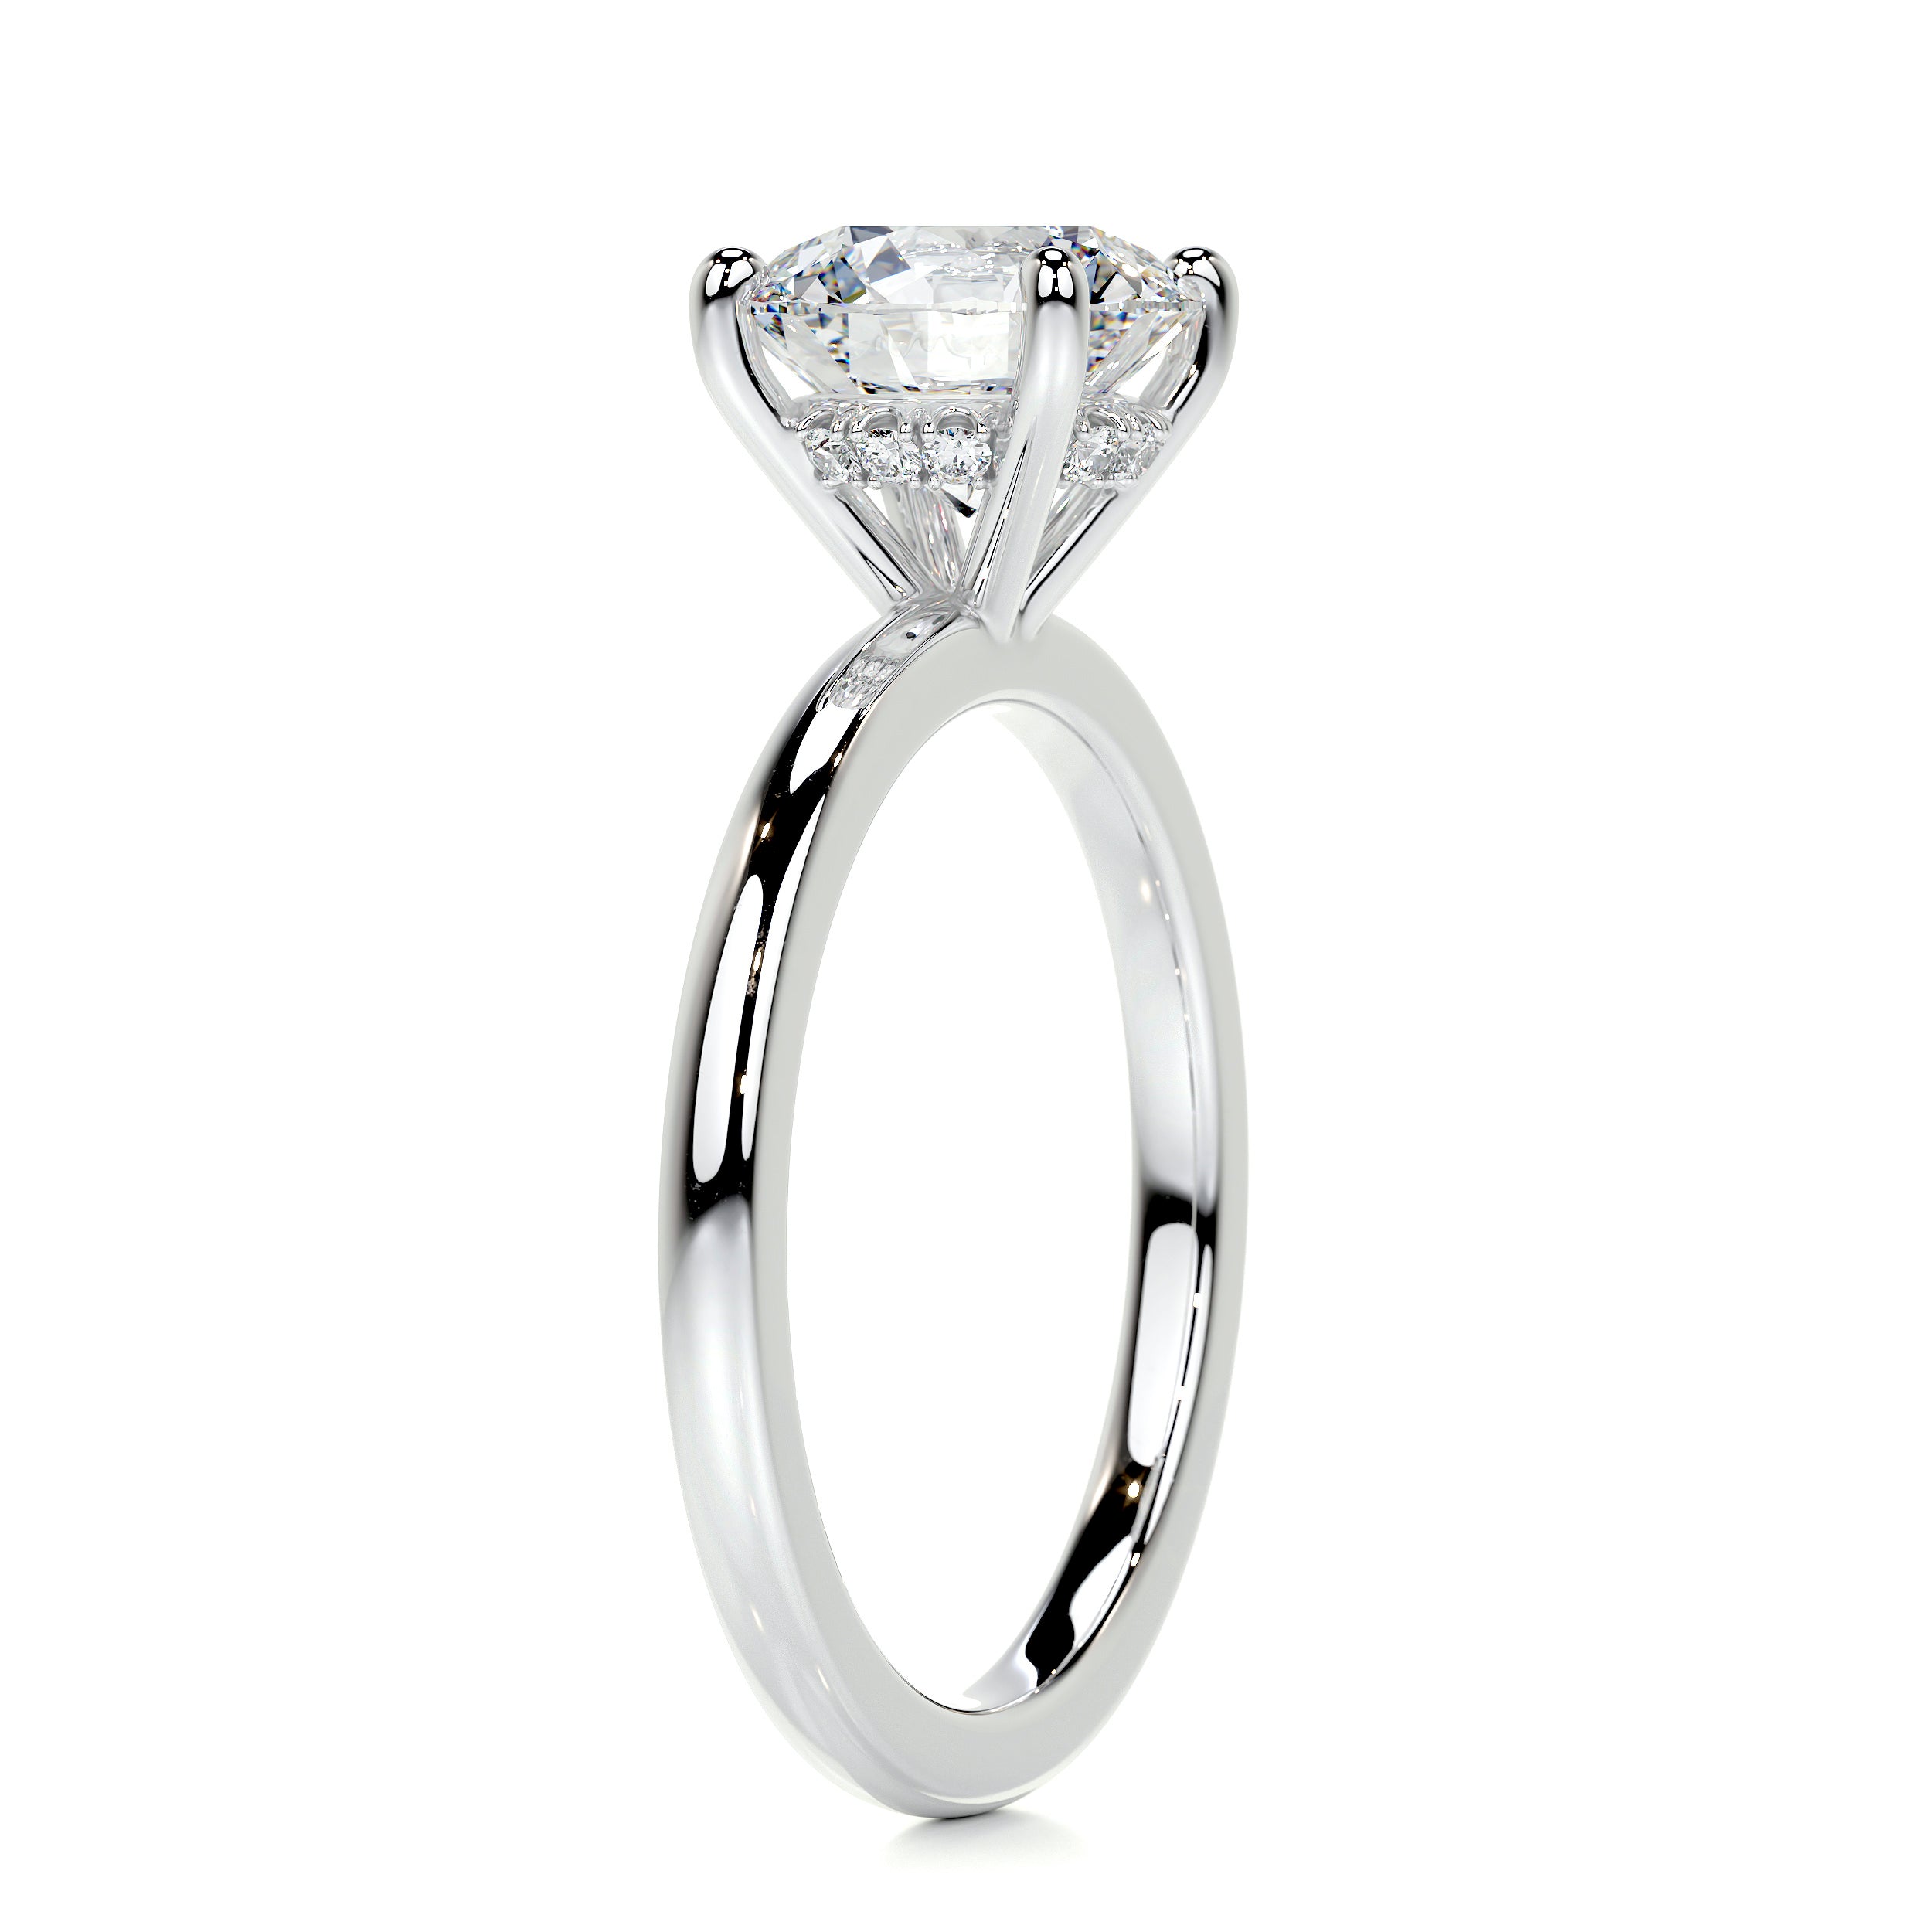 Cynthia Diamond Engagement Ring   (2.1 Carat) -14K White Gold